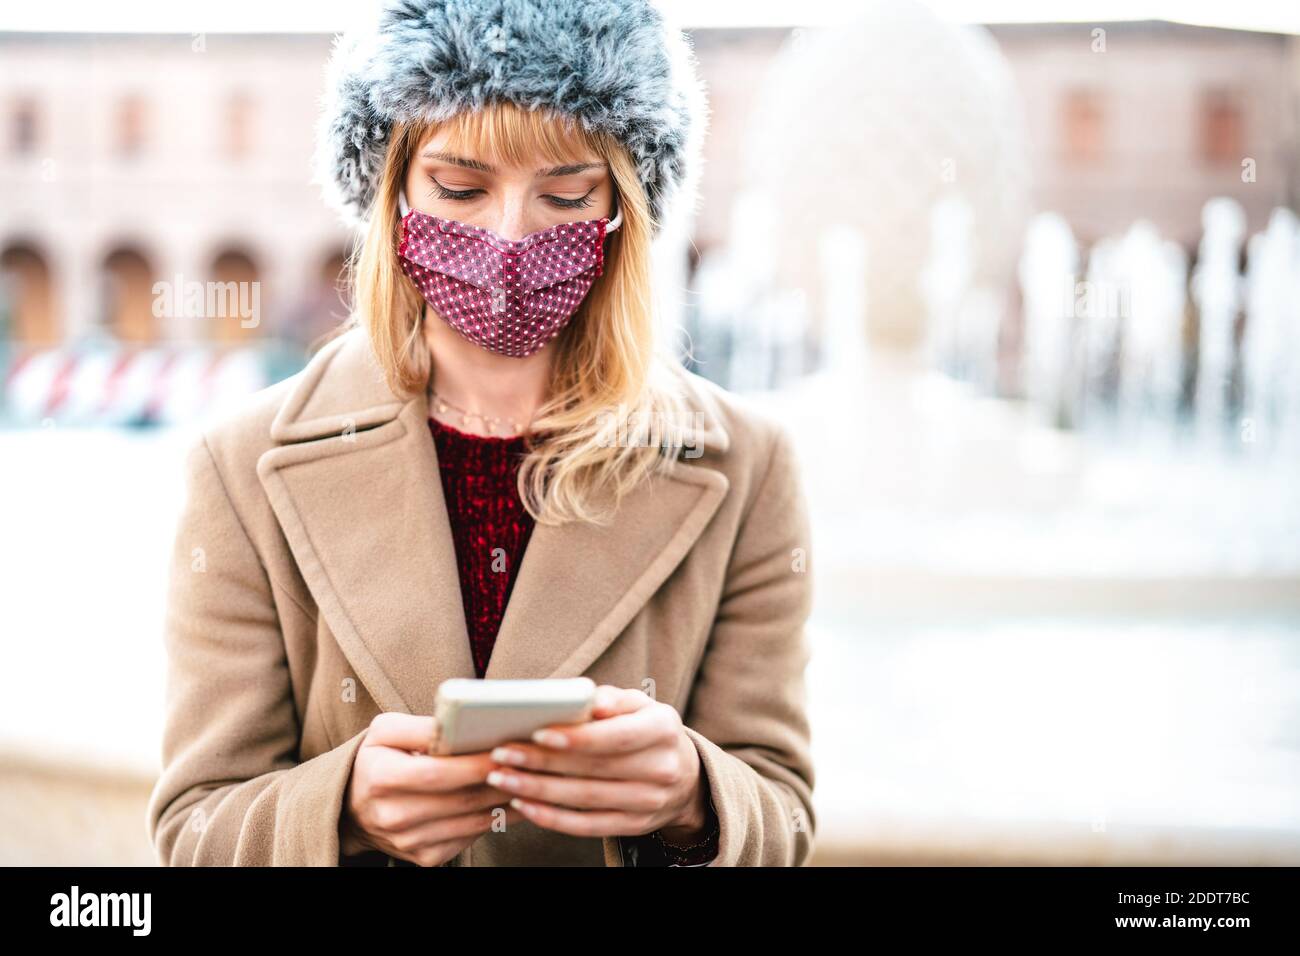 Addicted Frau mit Schutzmasken mit Tracking-App auf Handy Smartphone - Junge besorgt Millennial-Sharing-Inhalte auf Social Media Stockfoto